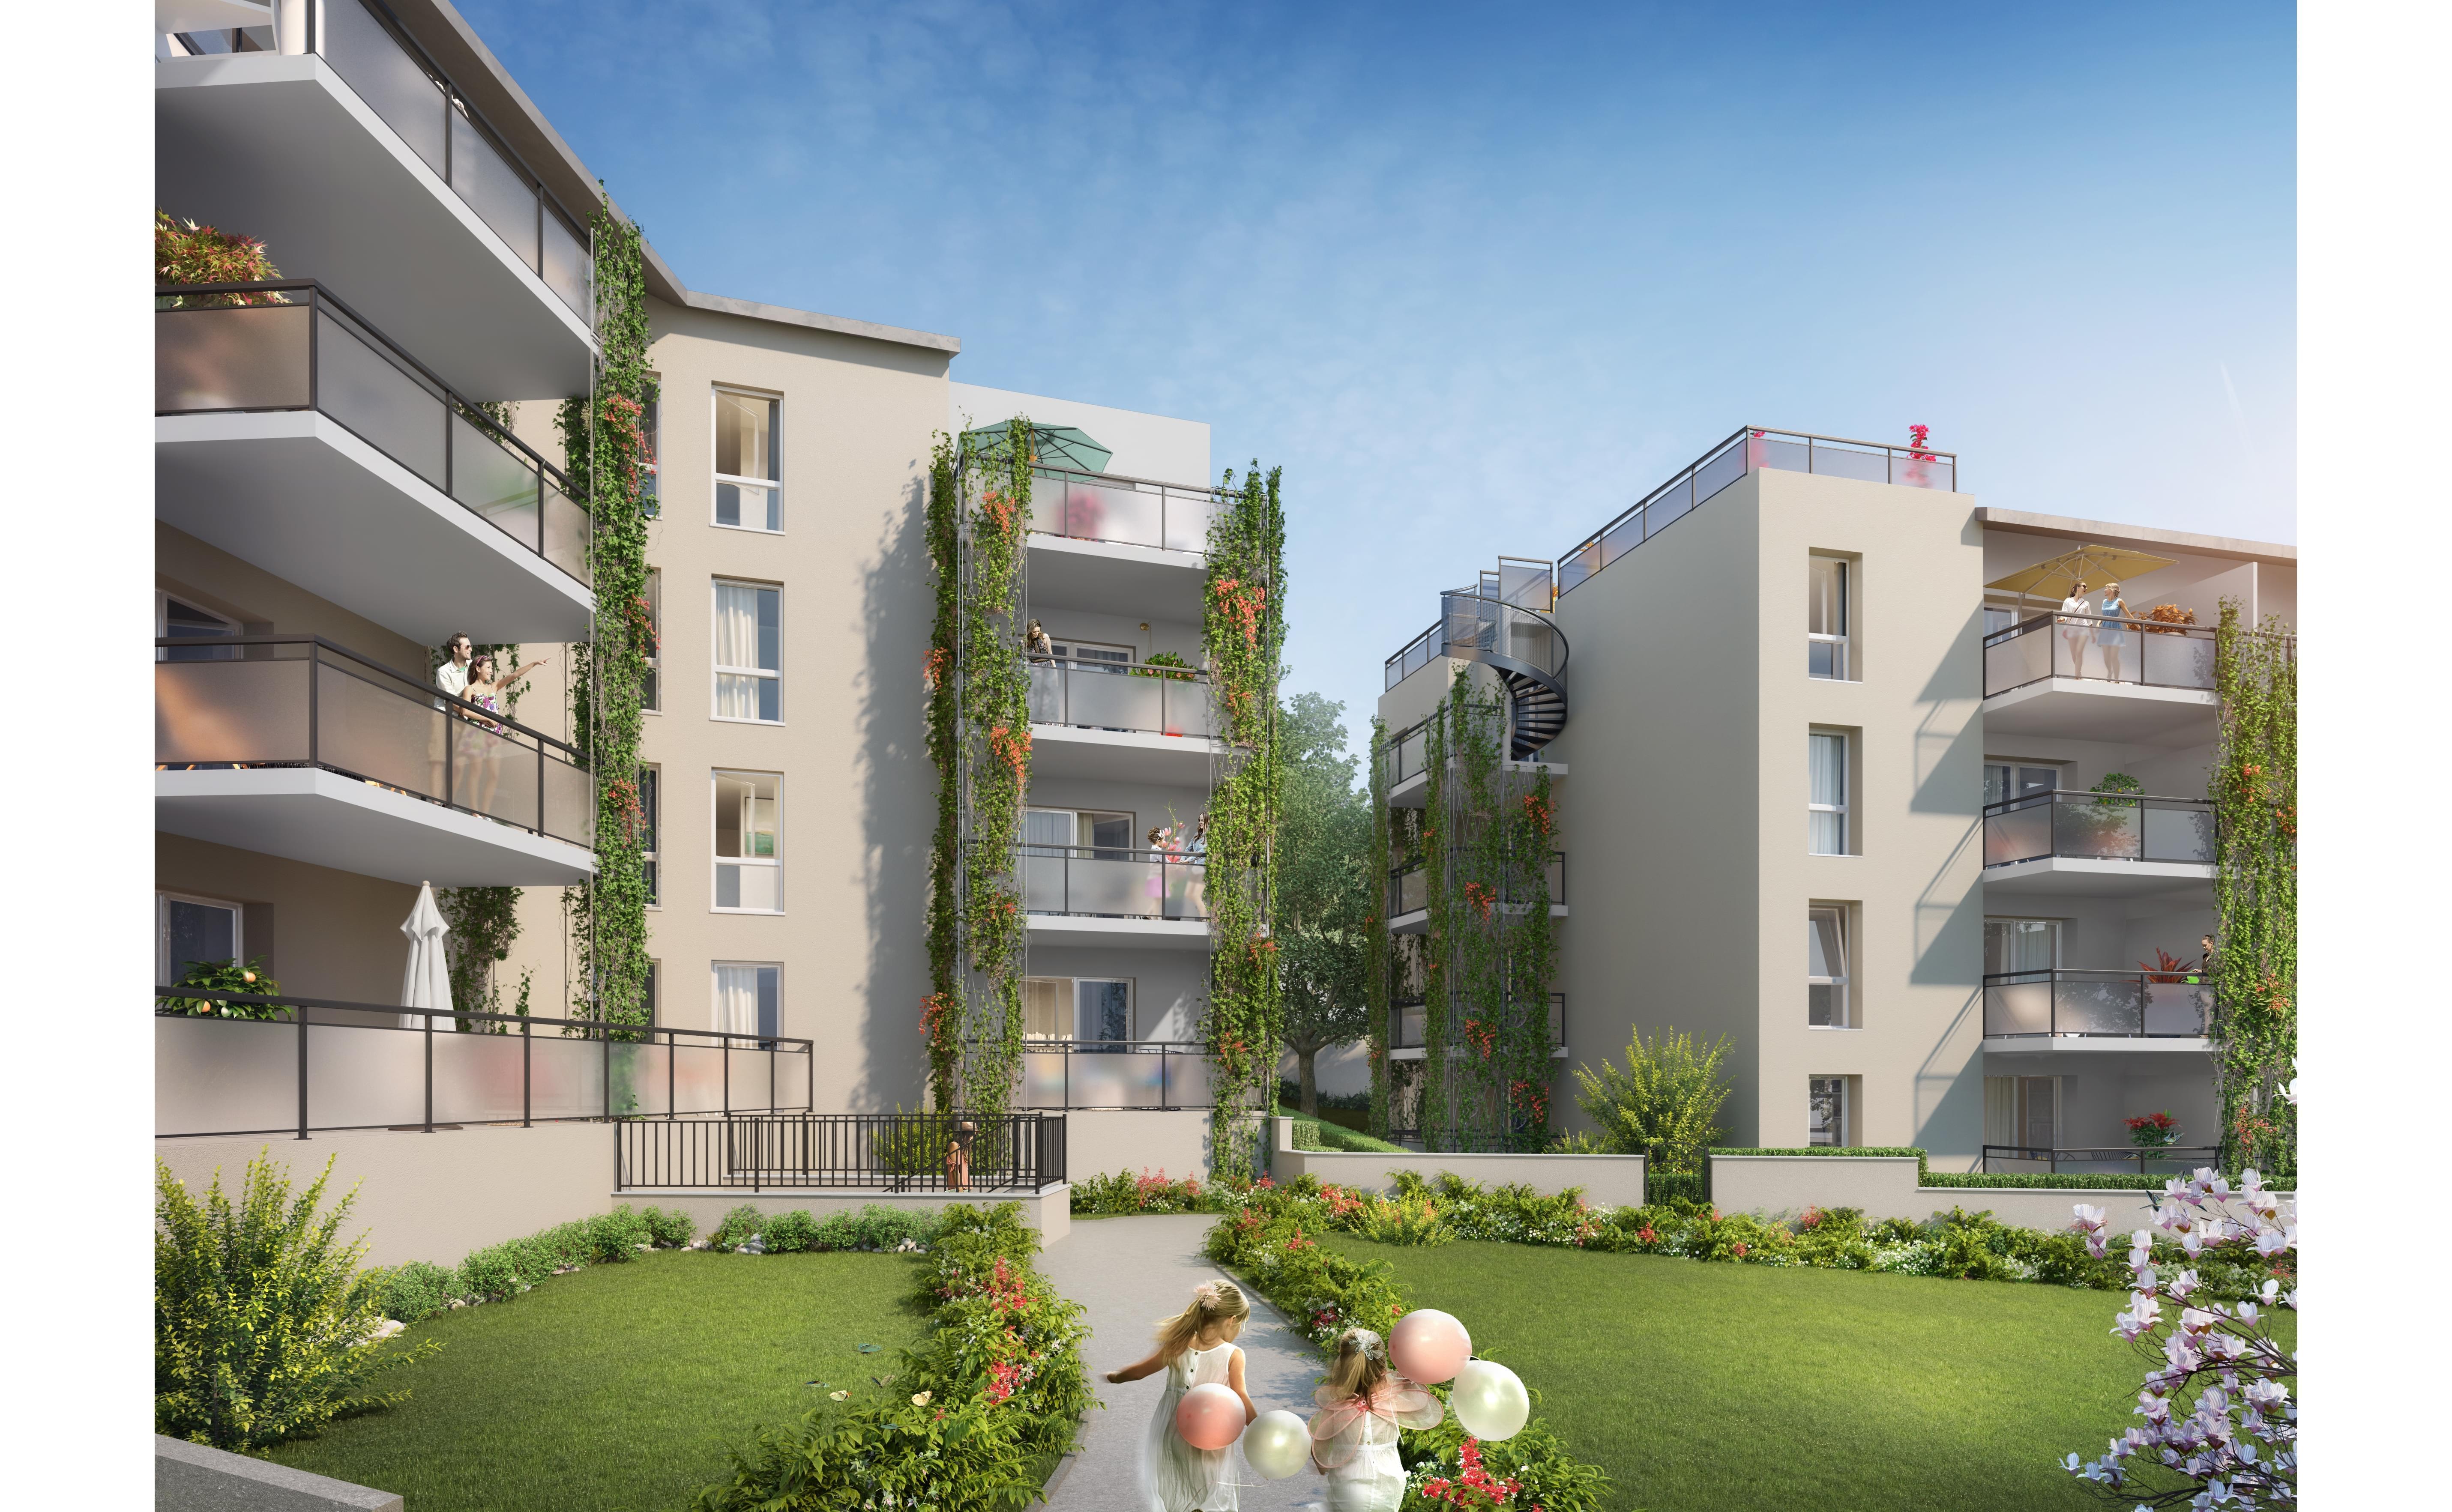 Résidence à Neuville sur Saône Petite copropriété, Appartements neufs lumineux, Espaces verts agréables,